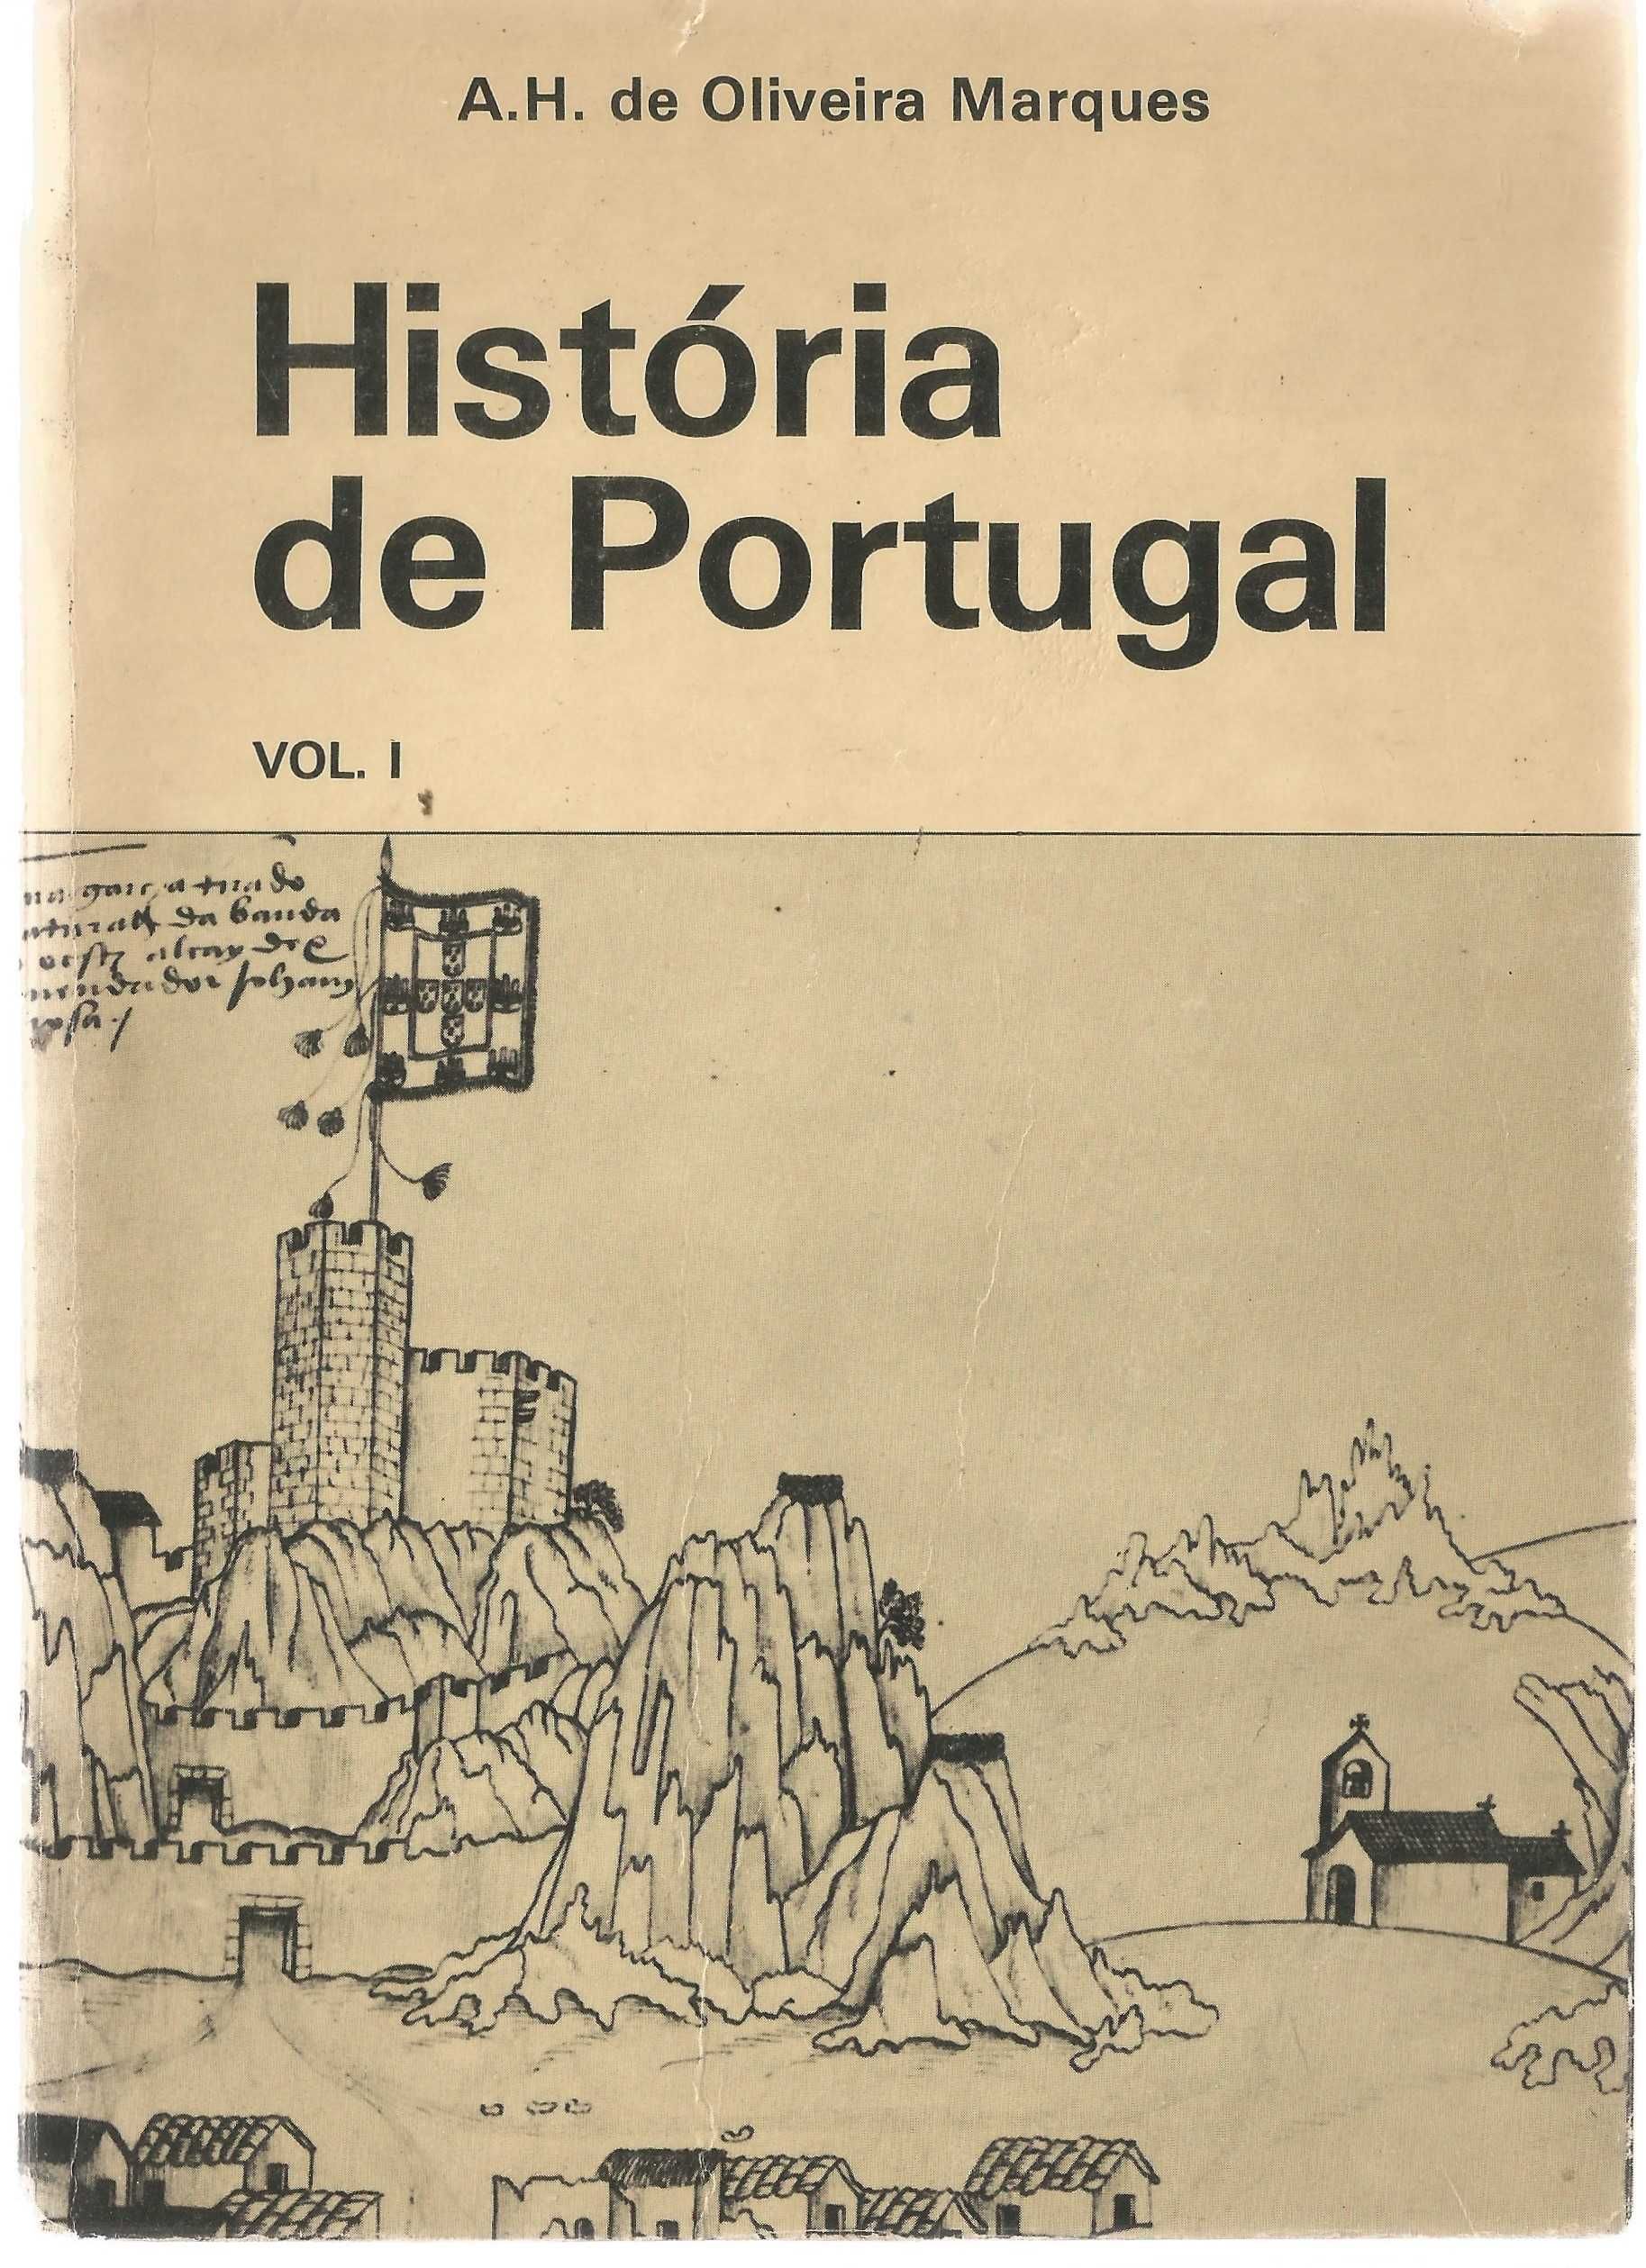 Oliveira Martins - História de Portugal Vol. I - Portes Grátis